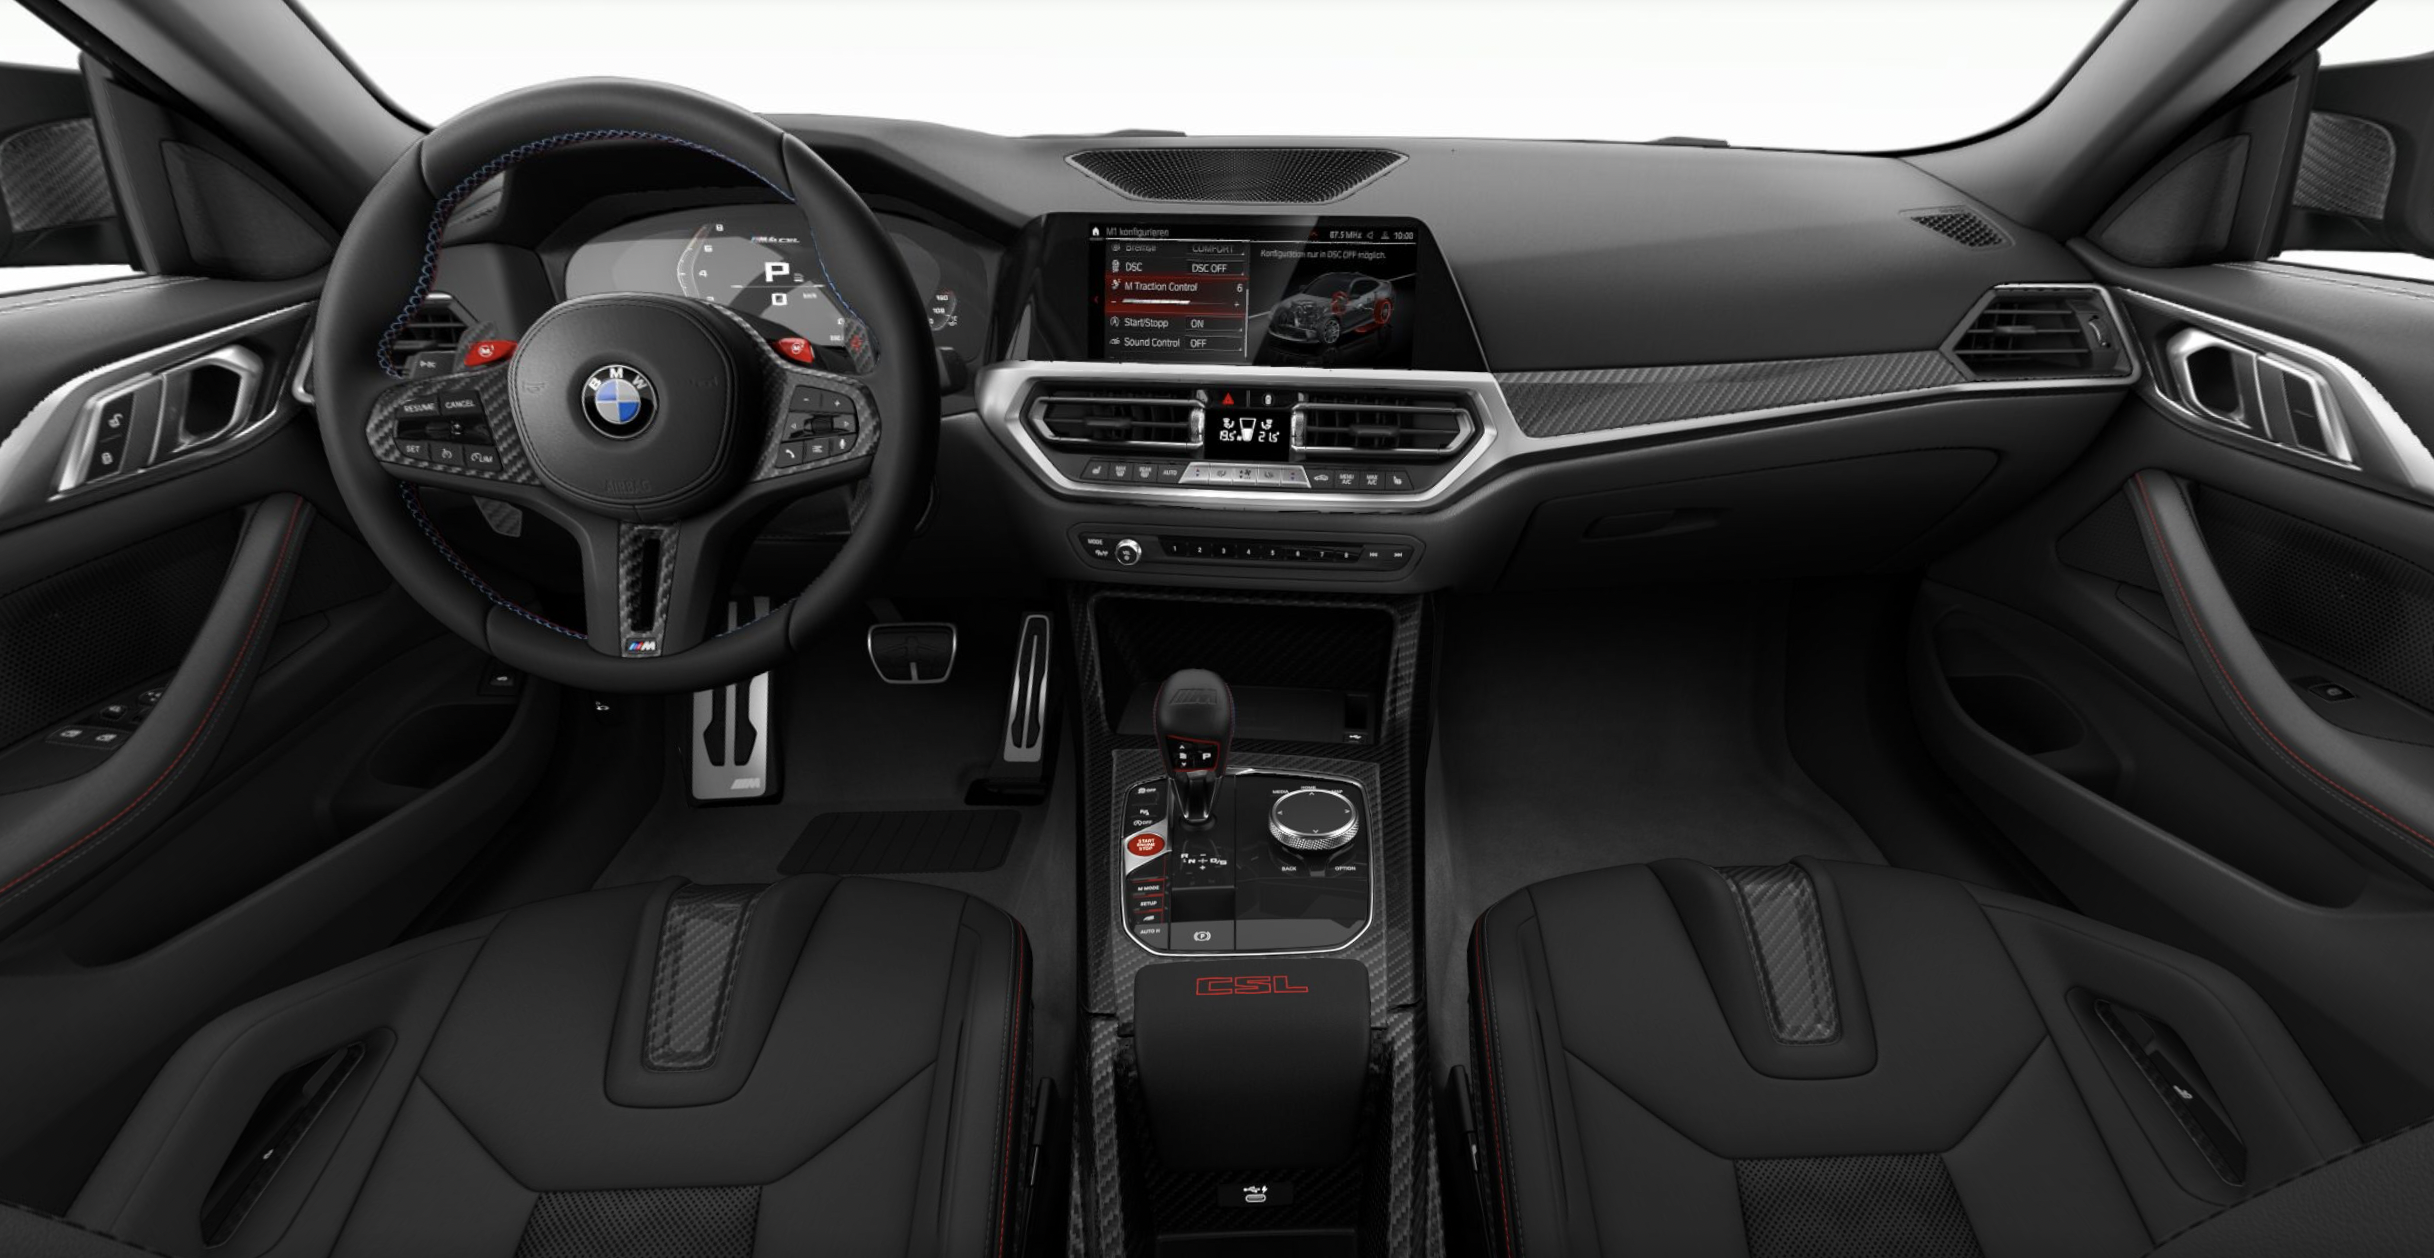 BMW M4 CSL | novinka 2022 | limitovaná edice 1000 aut | výročí 50. let BMW M | závodní sportovní coupé | první objednávky online | AUTOiBUY.com